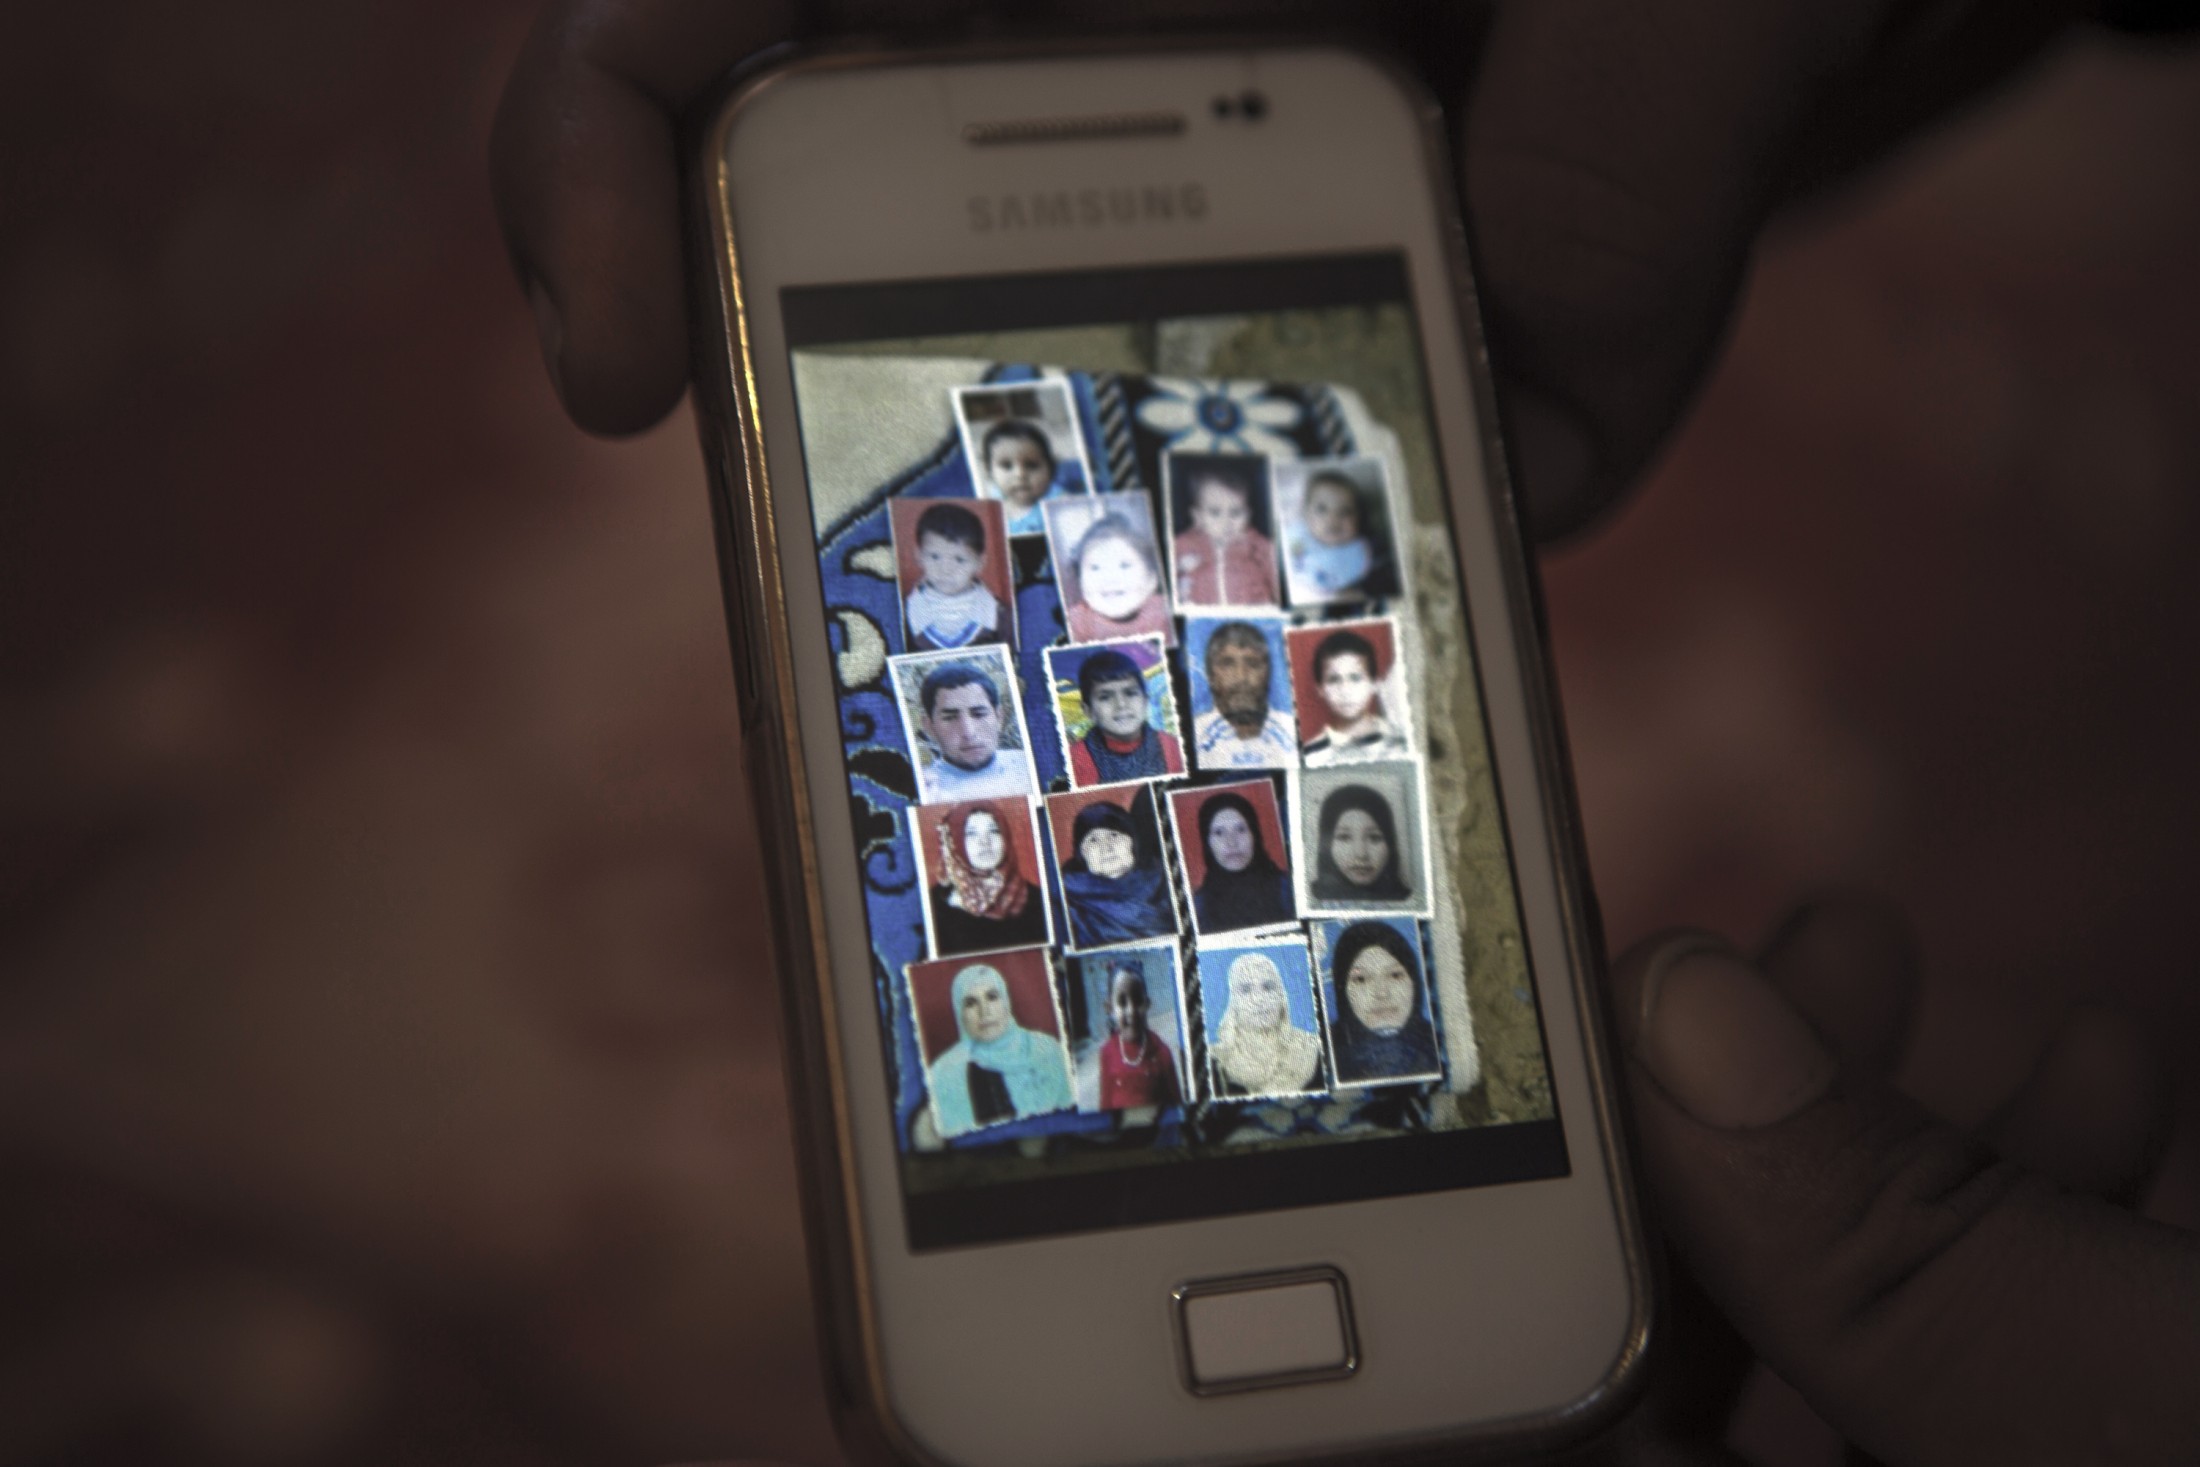  Fotos der Familie al-Najjar, getötet mitten in der Nacht, in ihrem eigenen Haus. Zehn der Toten waren Kinder.
